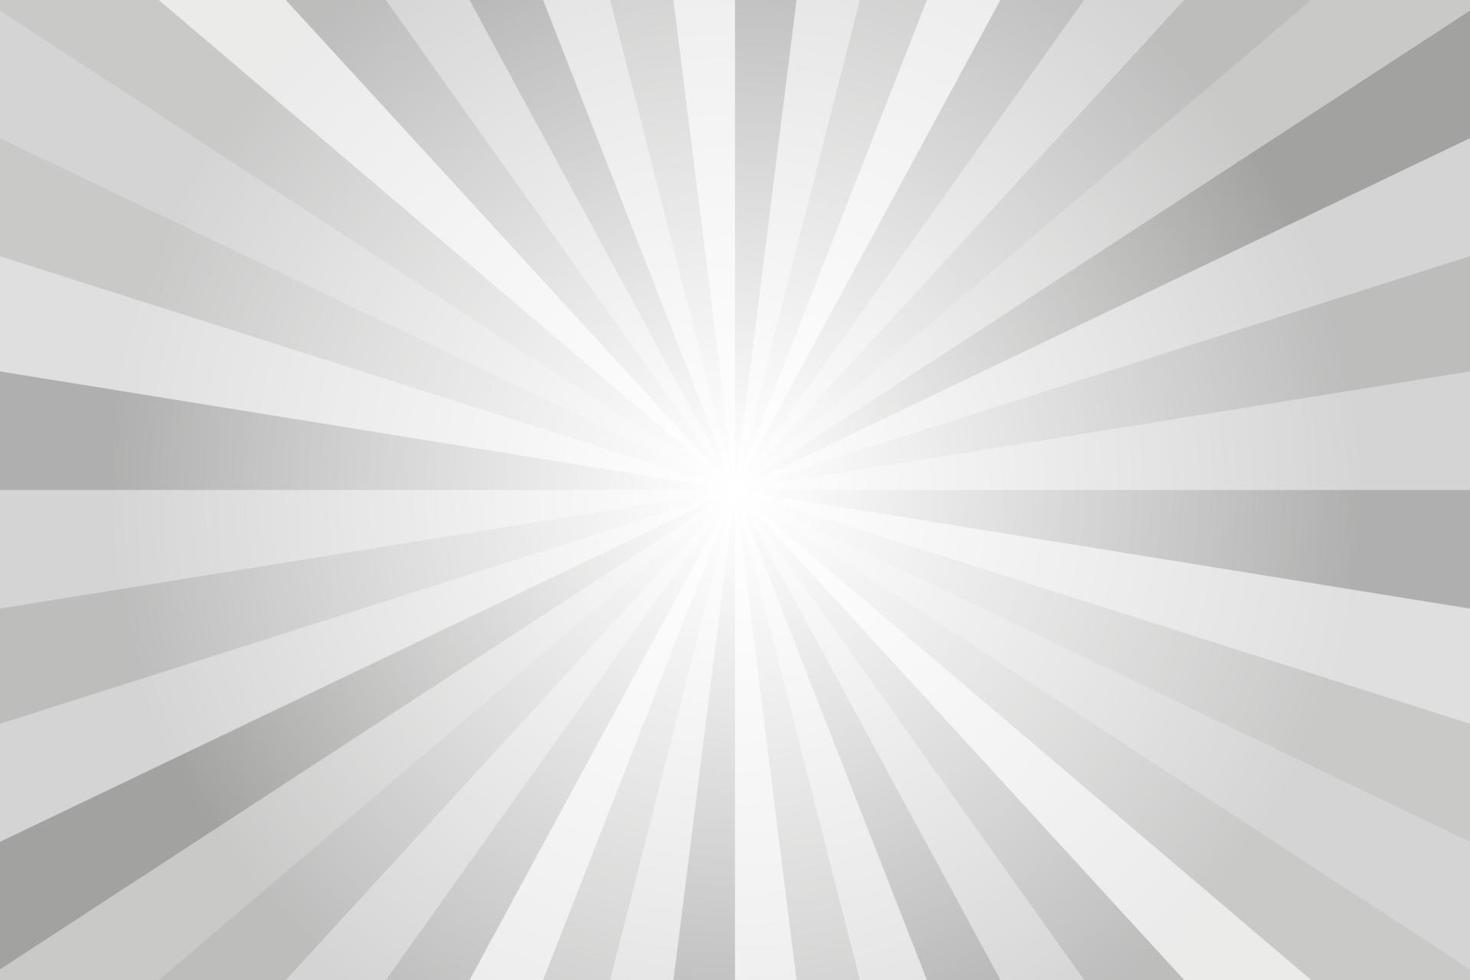 Hintergrund der Sonnenstrahlen. weißes und graues radiales abstraktes komisches Muster. Vektor Explosion abstrakte Linien Hintergrund